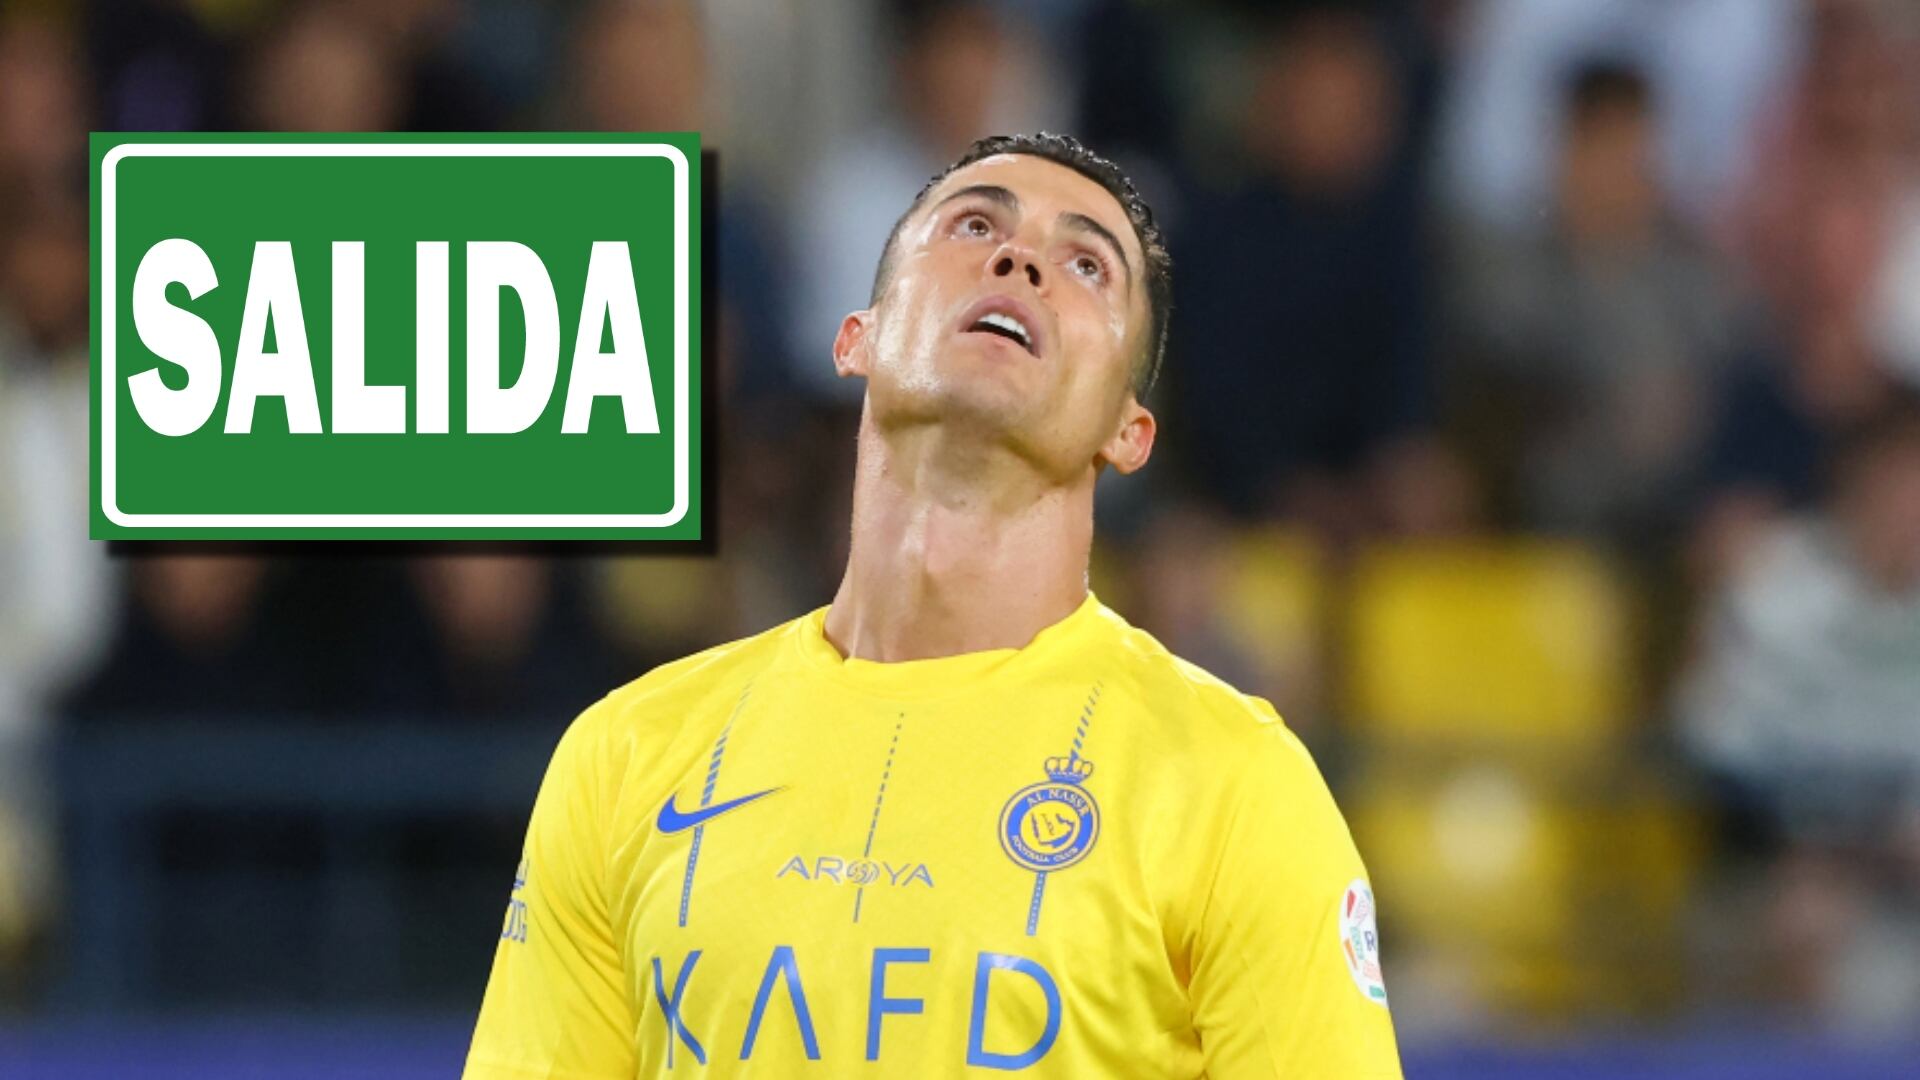 El jugador que Cristiano Ronaldo quiere fuera de Al-Nassr tras caer ante Al-Hilal